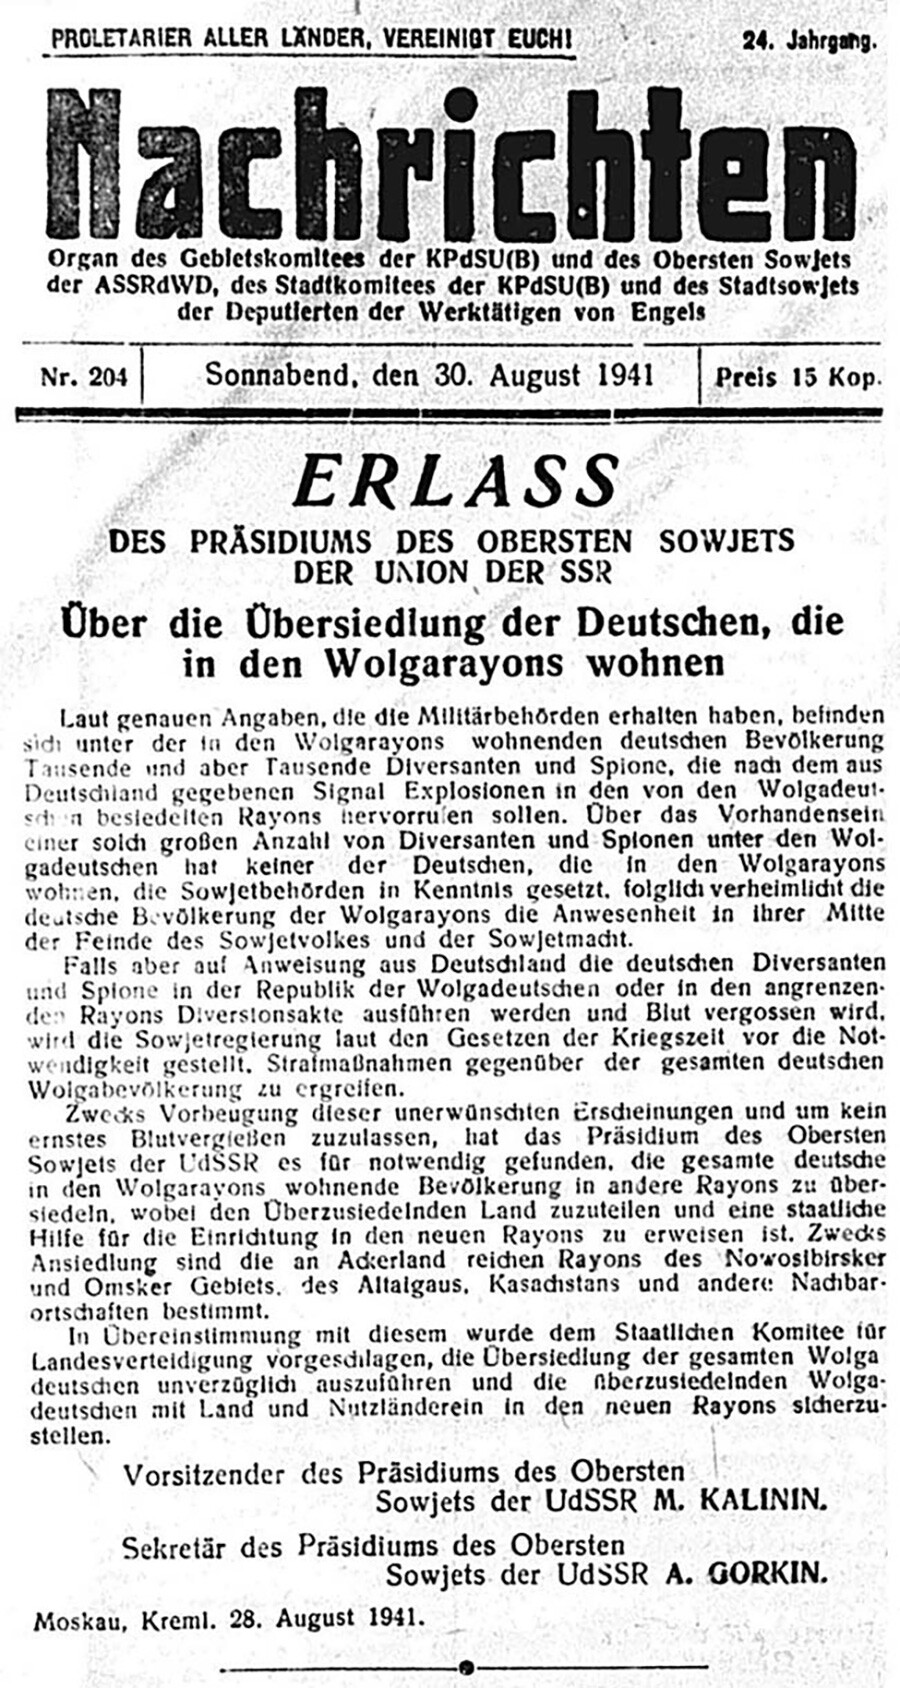 Der Erlass vom 28. August 1941 „Über die Umsiedlung der im Wolgagebiet ansässigen Deutschen“ wurde am 30. August in zwei Zeitungen der Wolgadeutschen Republik - „Nachrichten“ und „Bolschewik“ - veröffentlicht.

